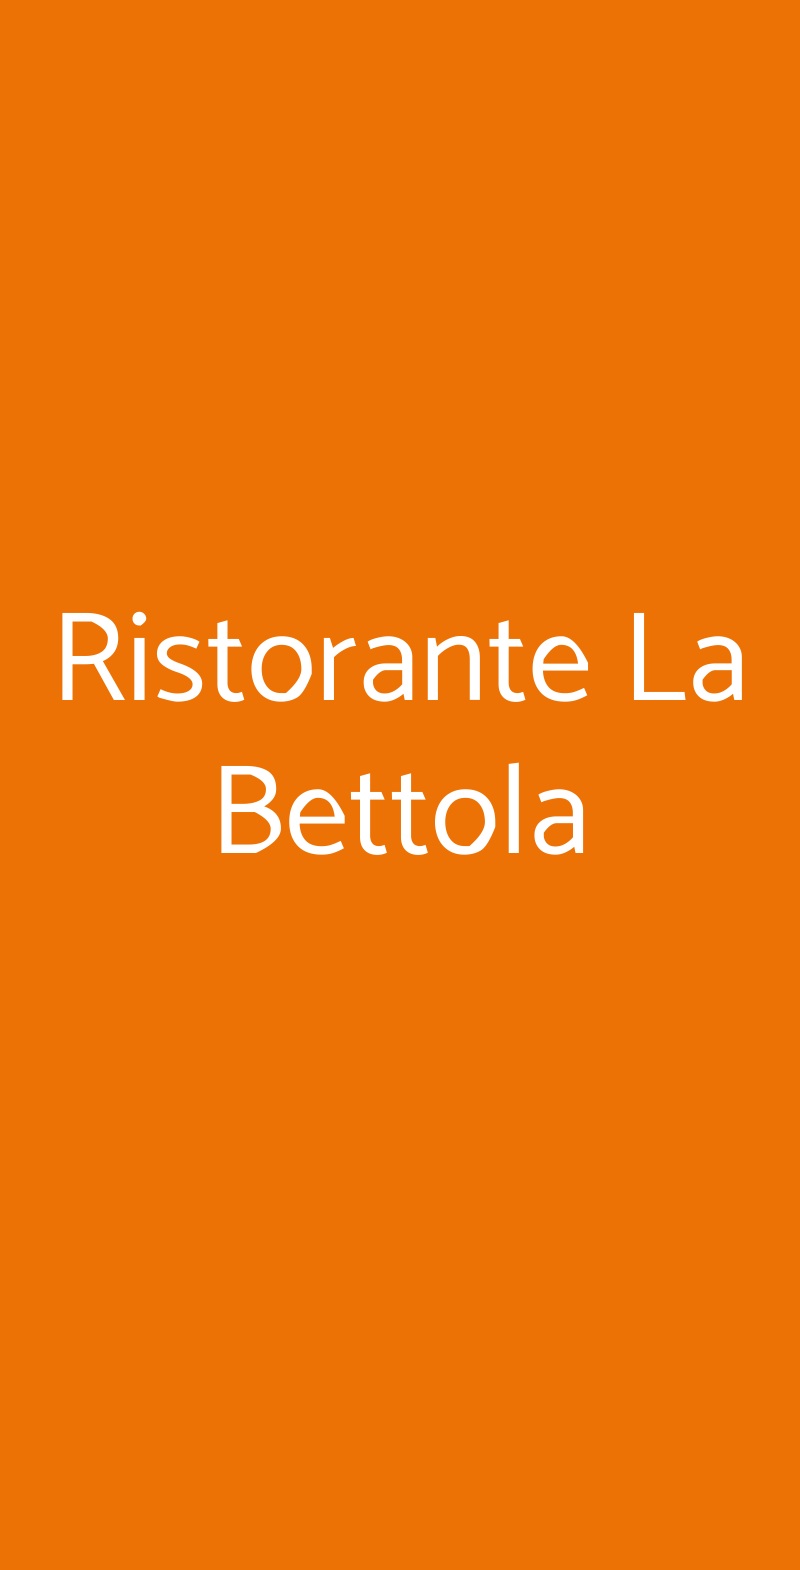 Ristorante La Bettola Aci Castello menù 1 pagina